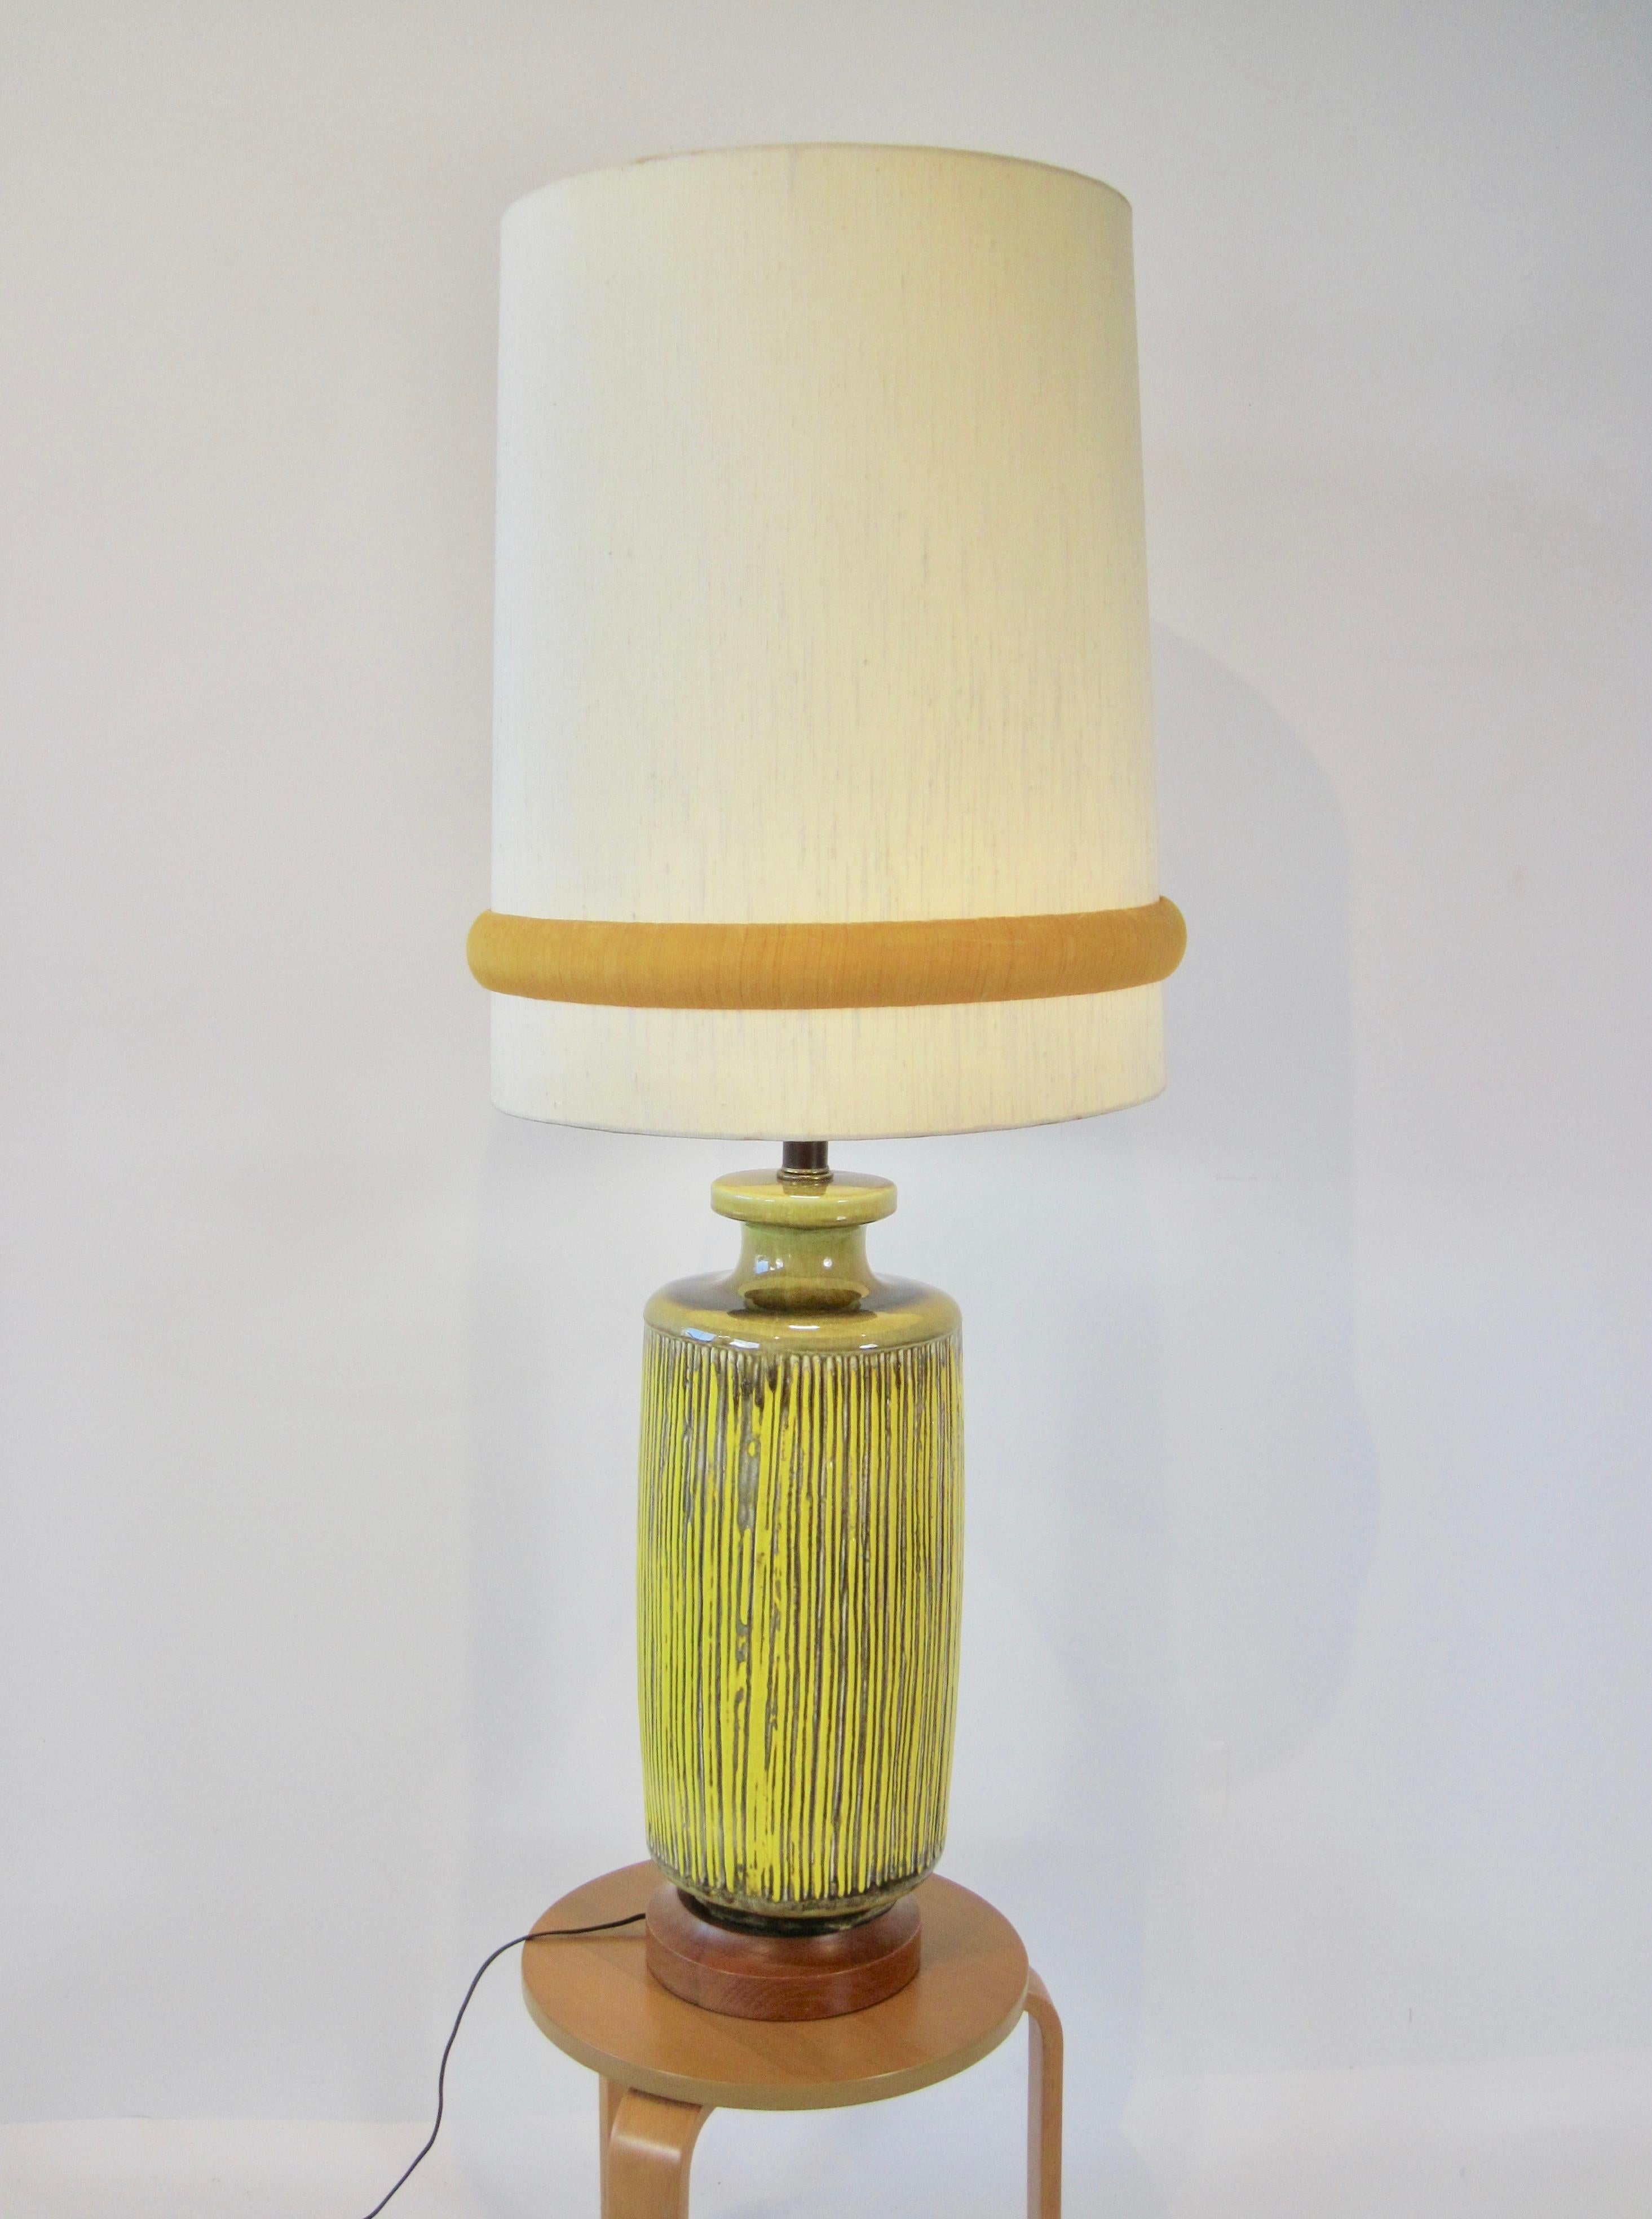 Lampe à col de bouteille en céramique de style Reed, jaune et vert olive, avec base en bois et abat-jour monumental. 
Peut être achetée sans abat-jour, les dimensions de la lampe sont 9